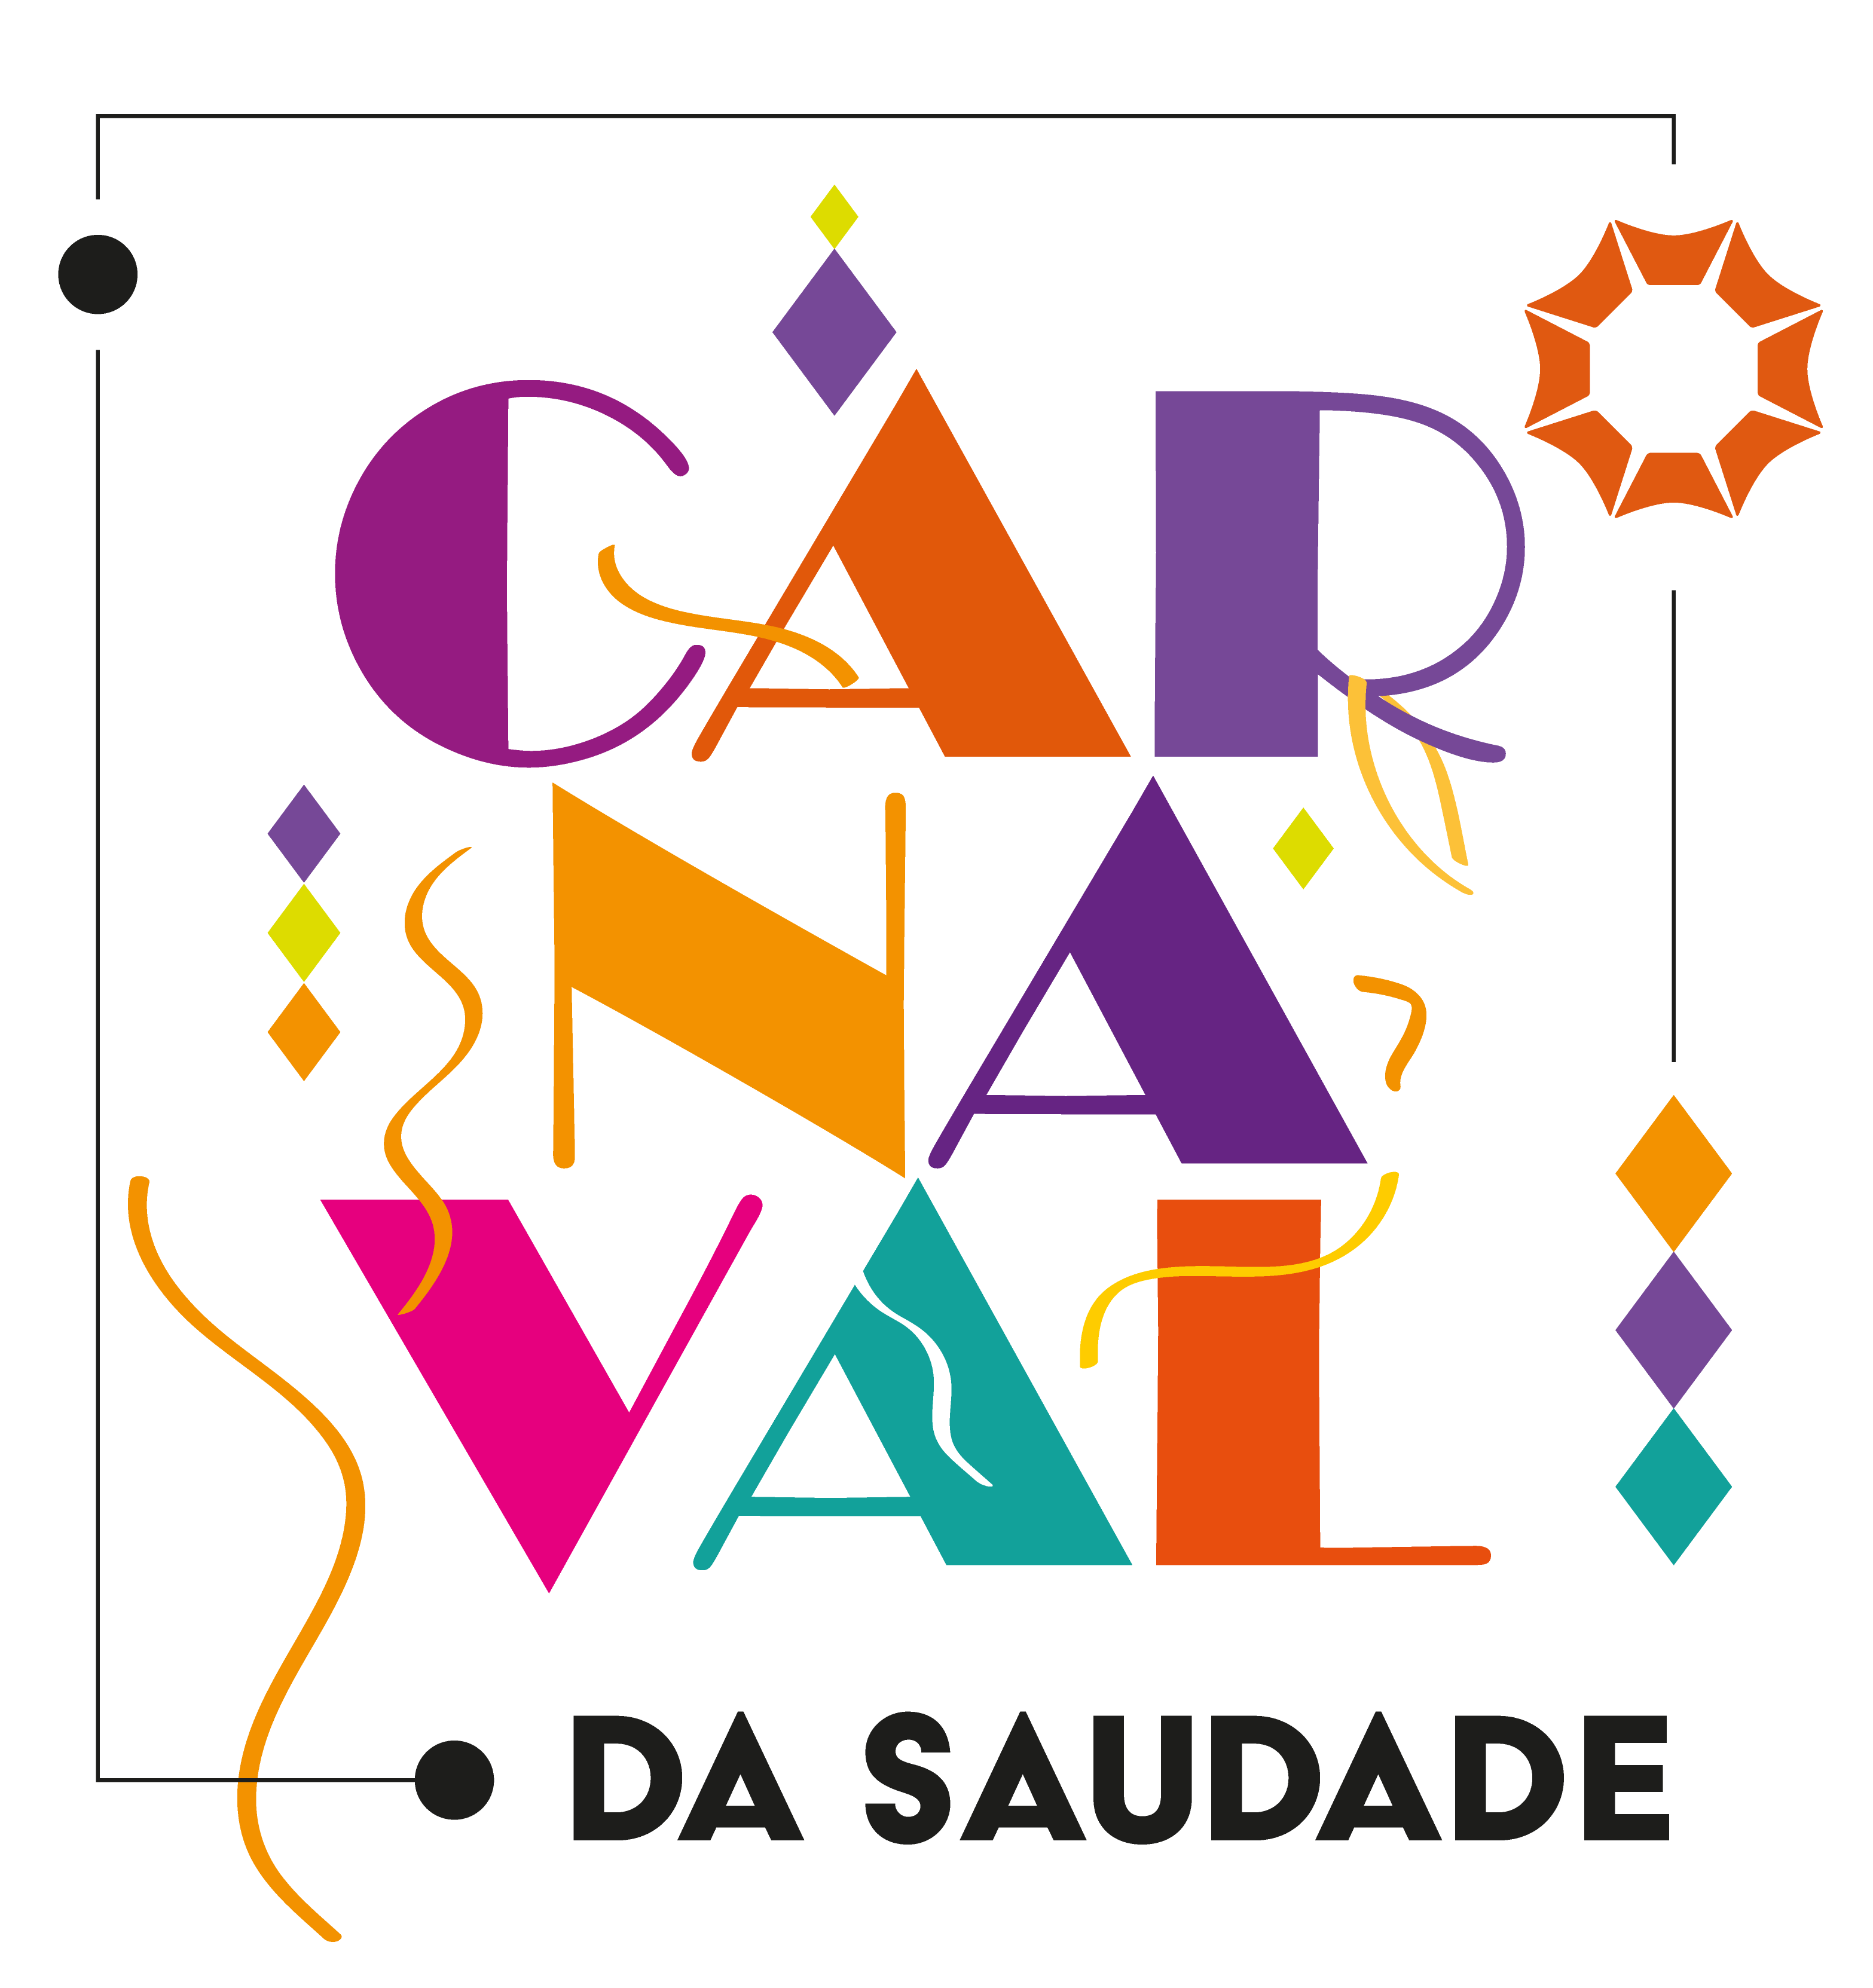 Carnaval da saudade Maceió Shopping; Confira a programação